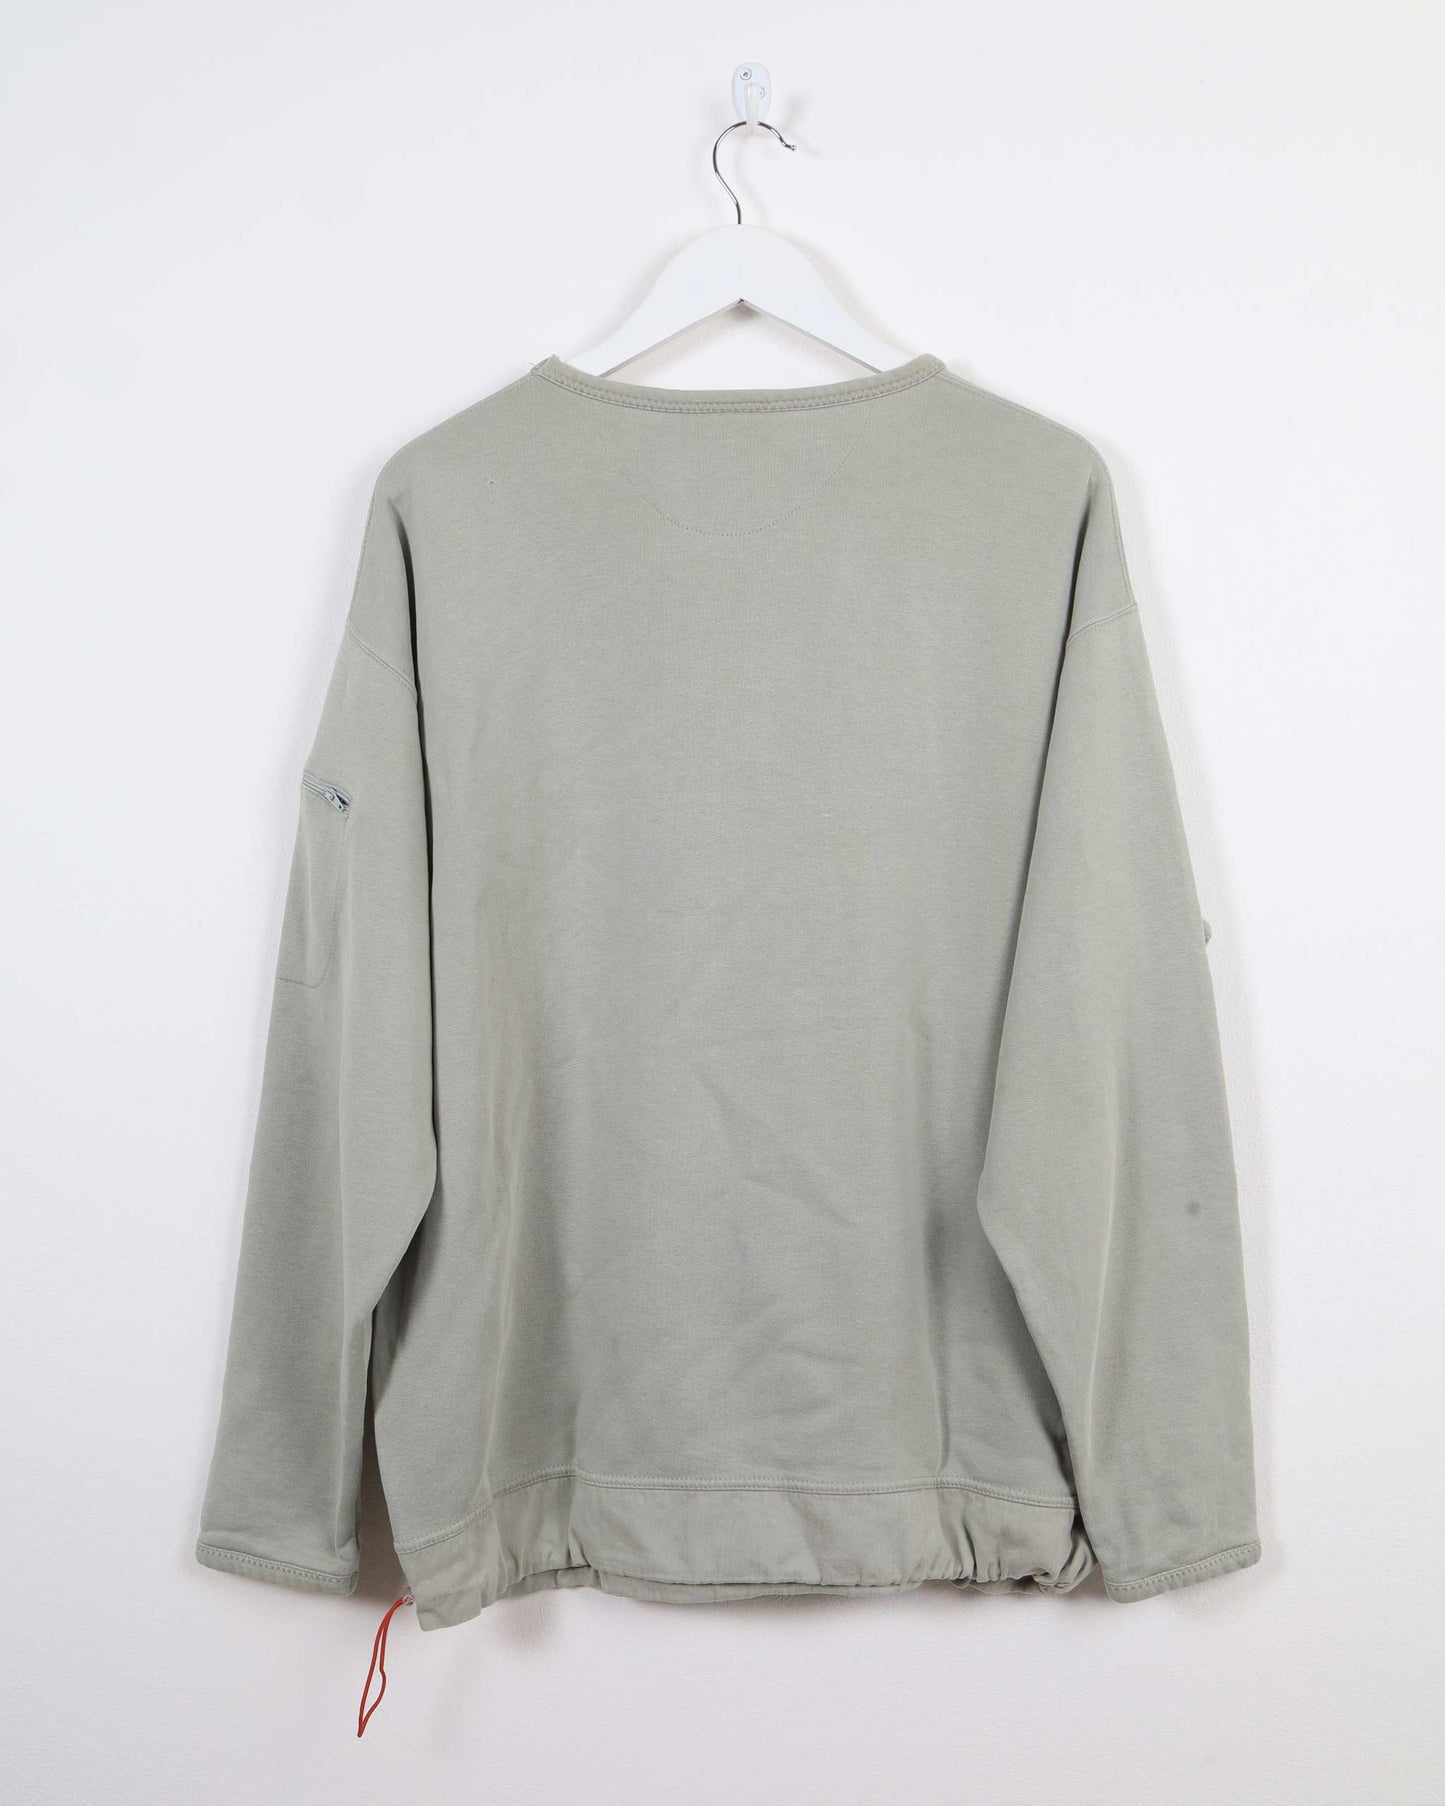 Reebok Vintage Sweatshirt in Grey